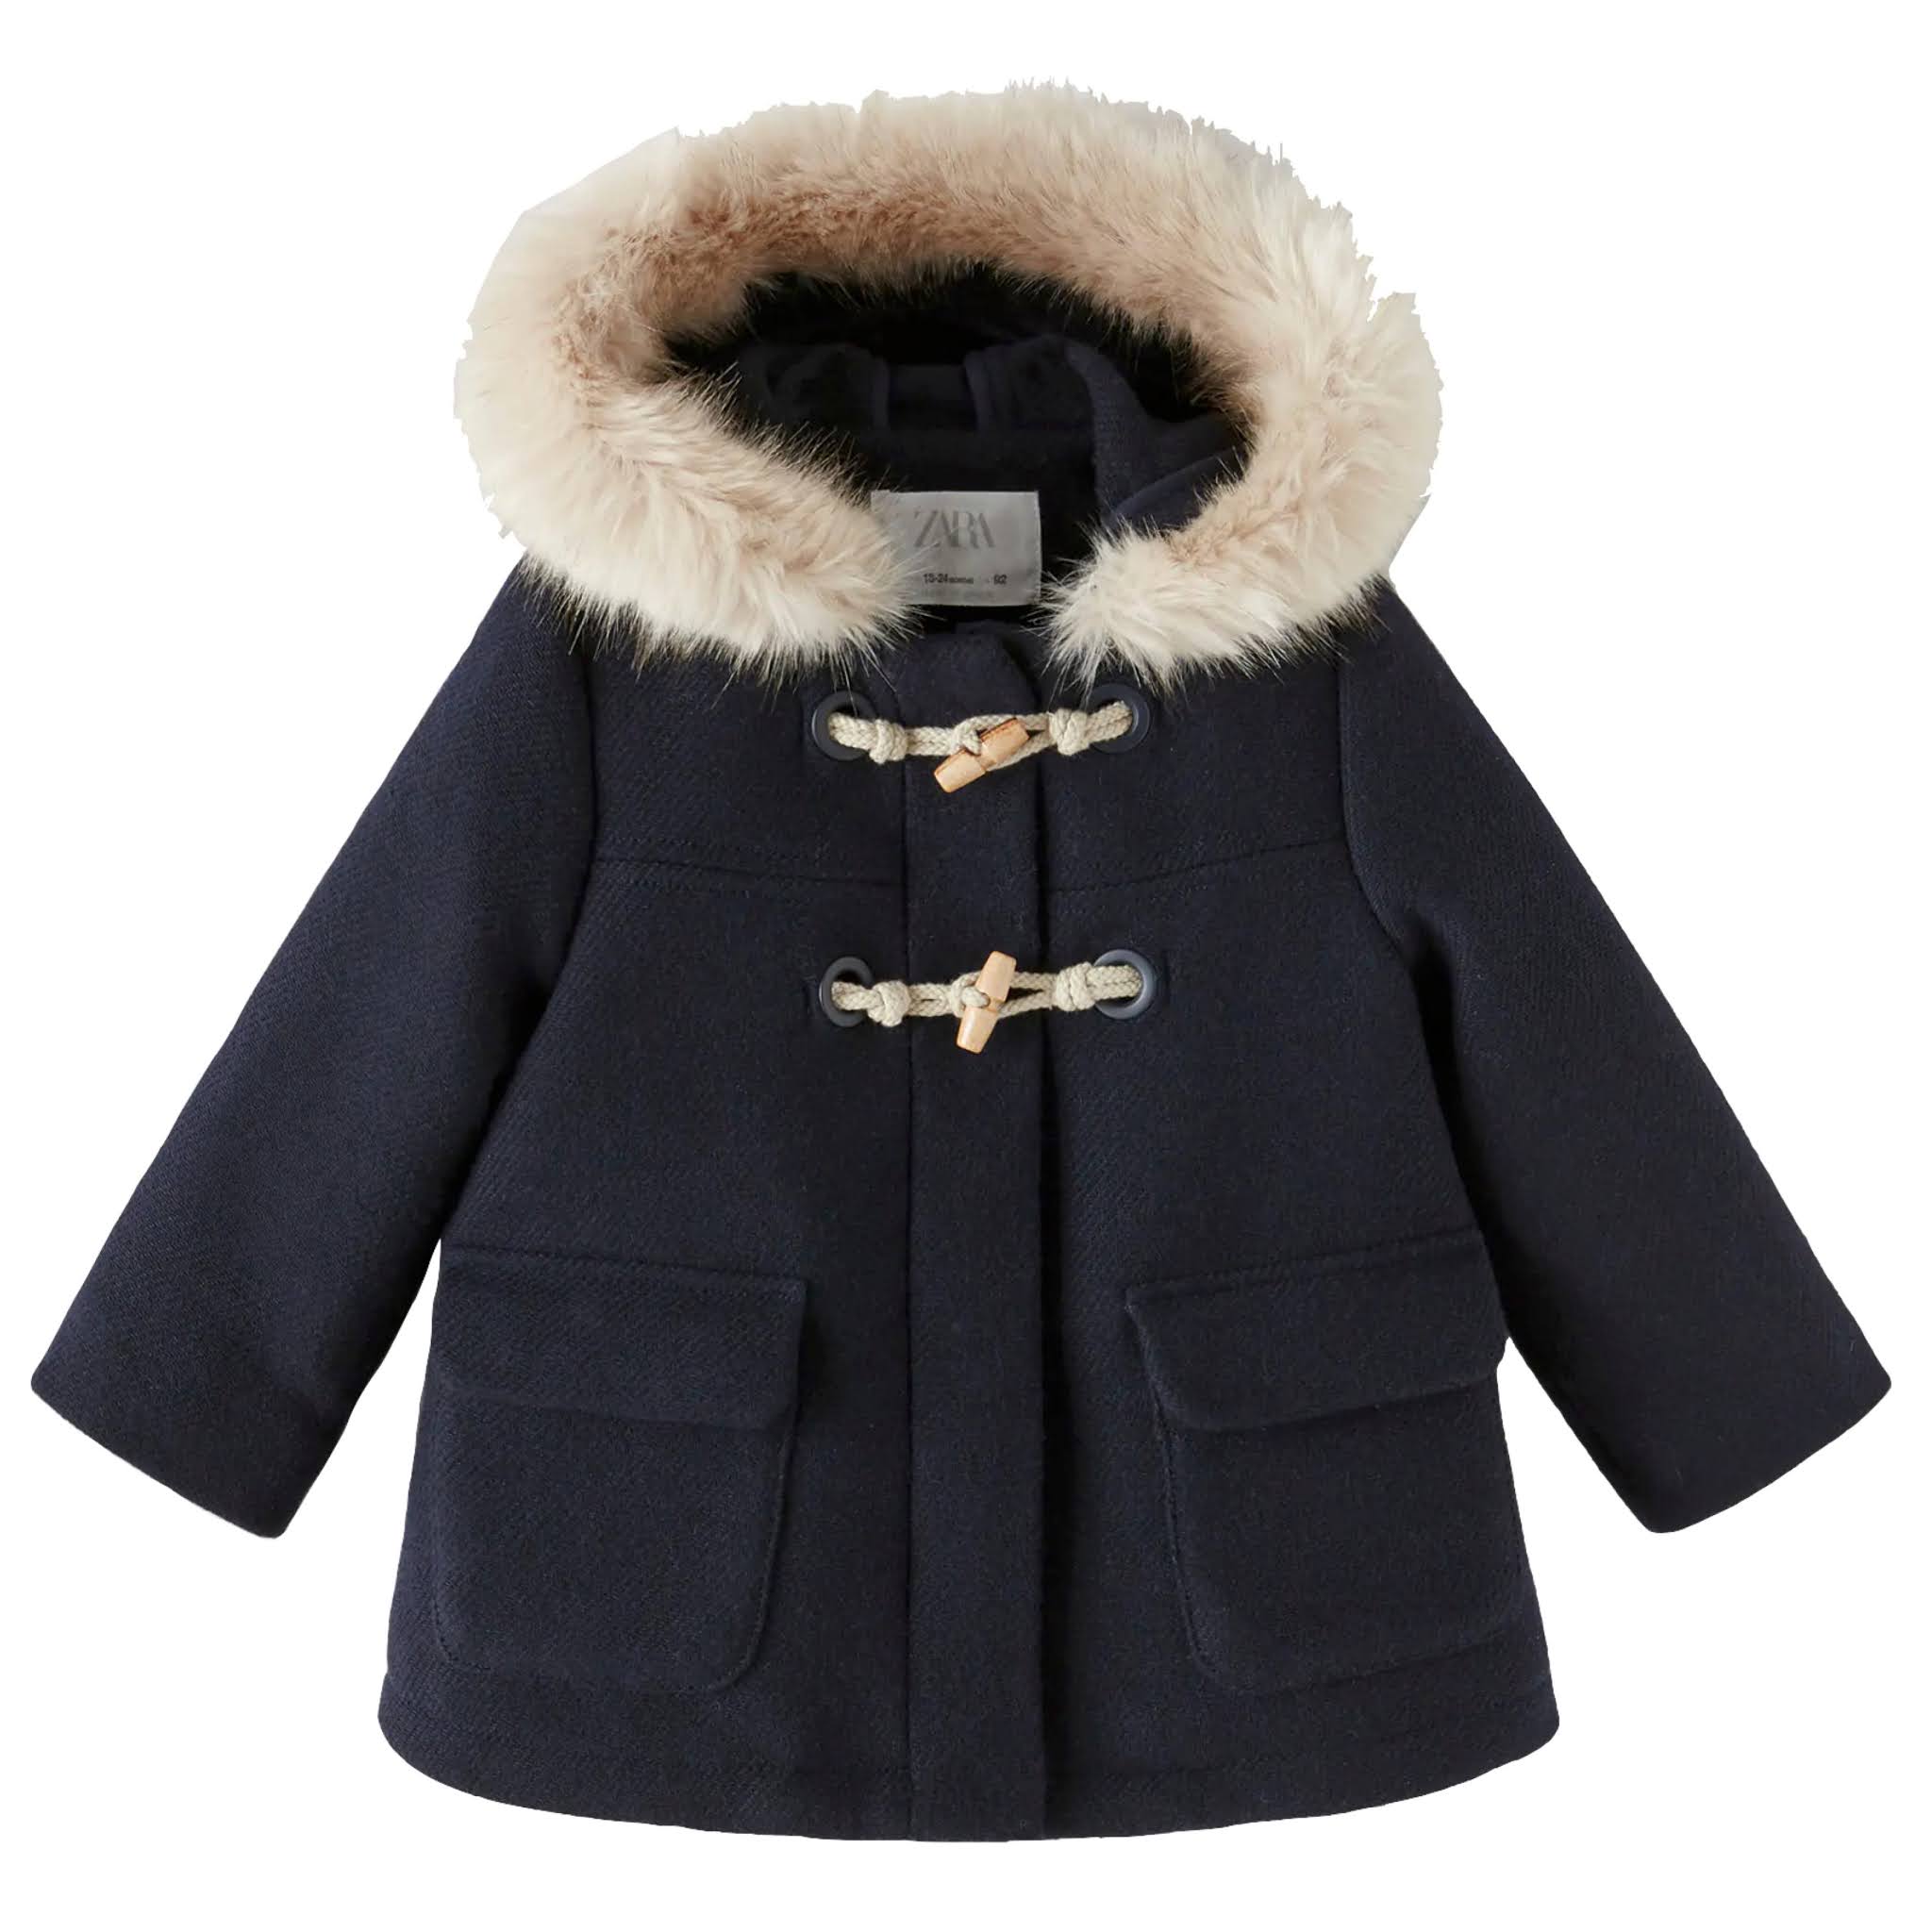 Kids Faux Fur Trimmed Coat from Zara Kids